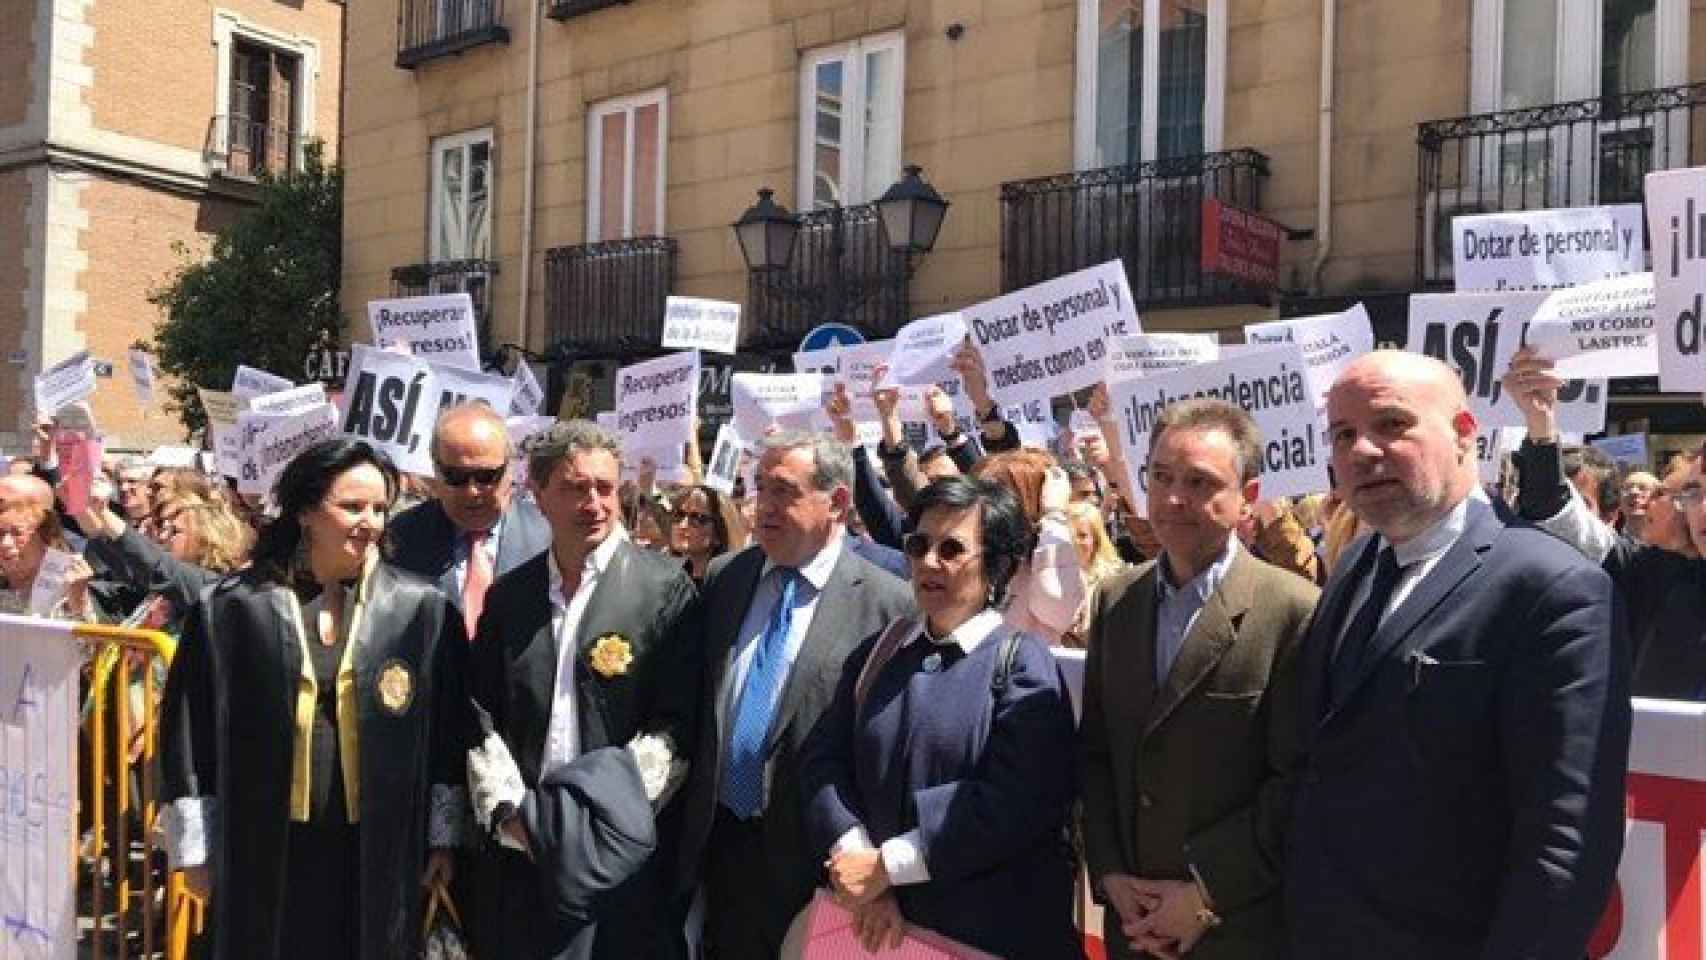 La manifestación ha tenido lugar frente a la sede del Ministerio de Justicia en Madrid